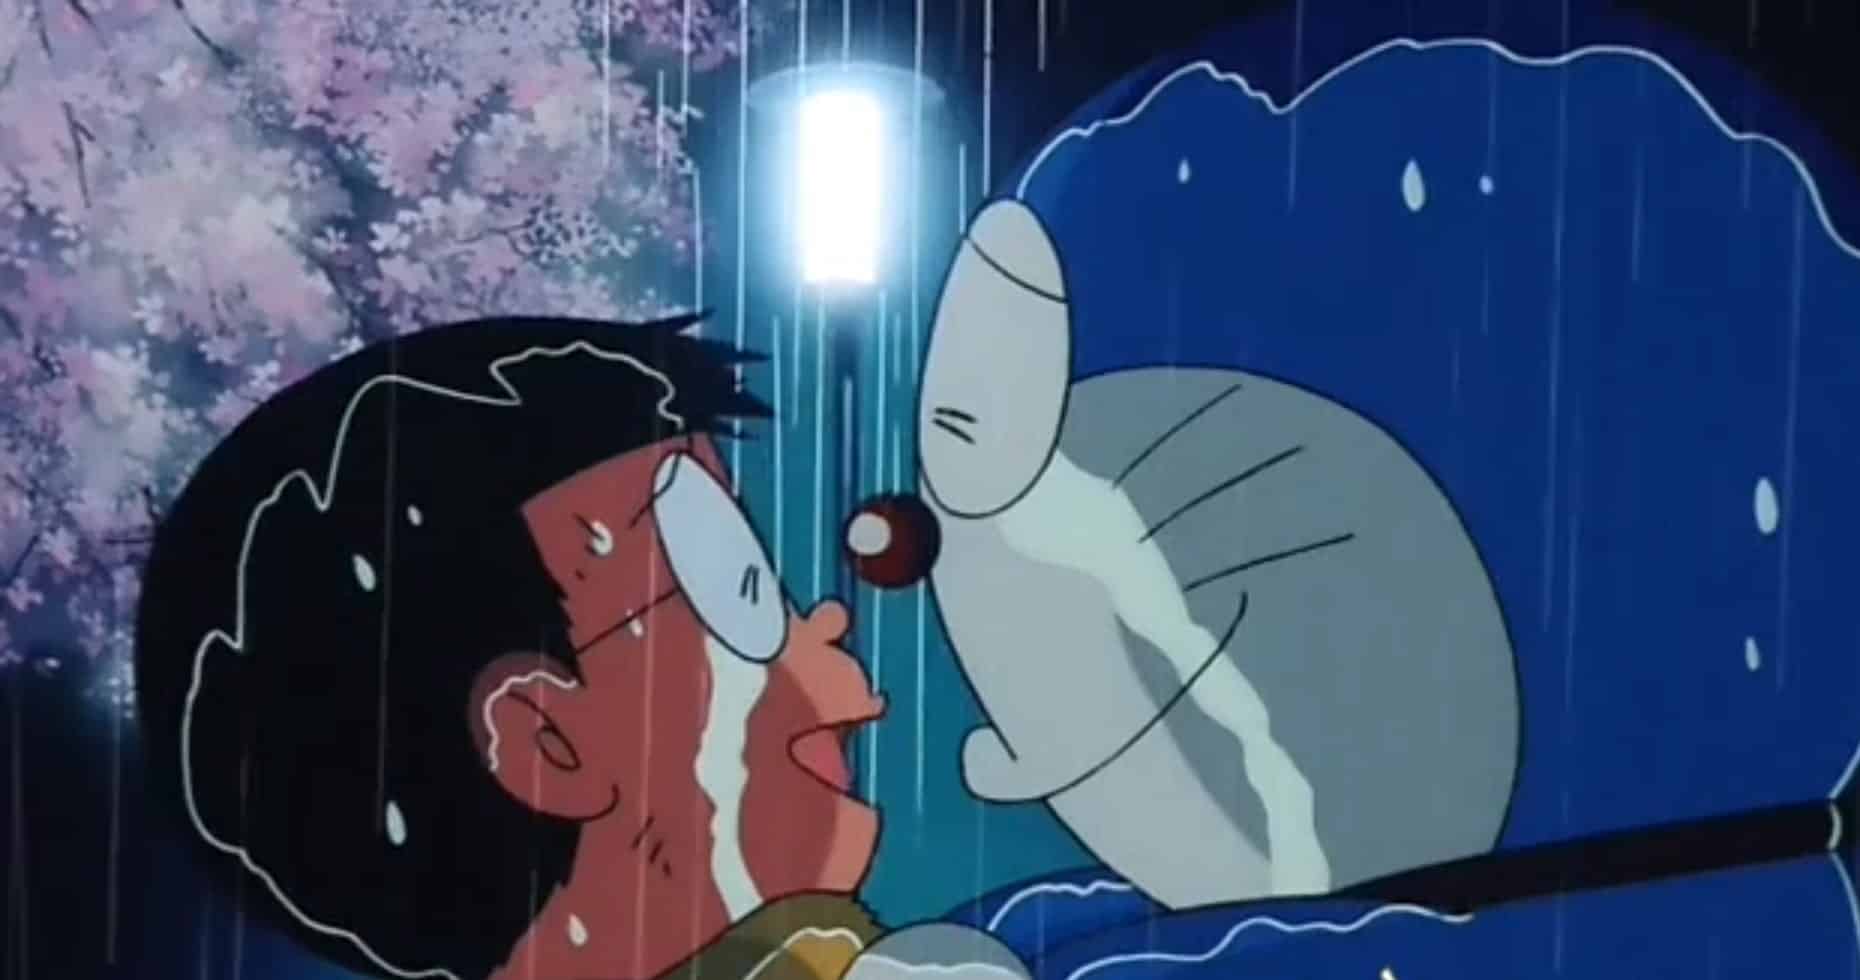 Hình Anime Doremon buồn cùng theo với Nobita rất đẹp nhất